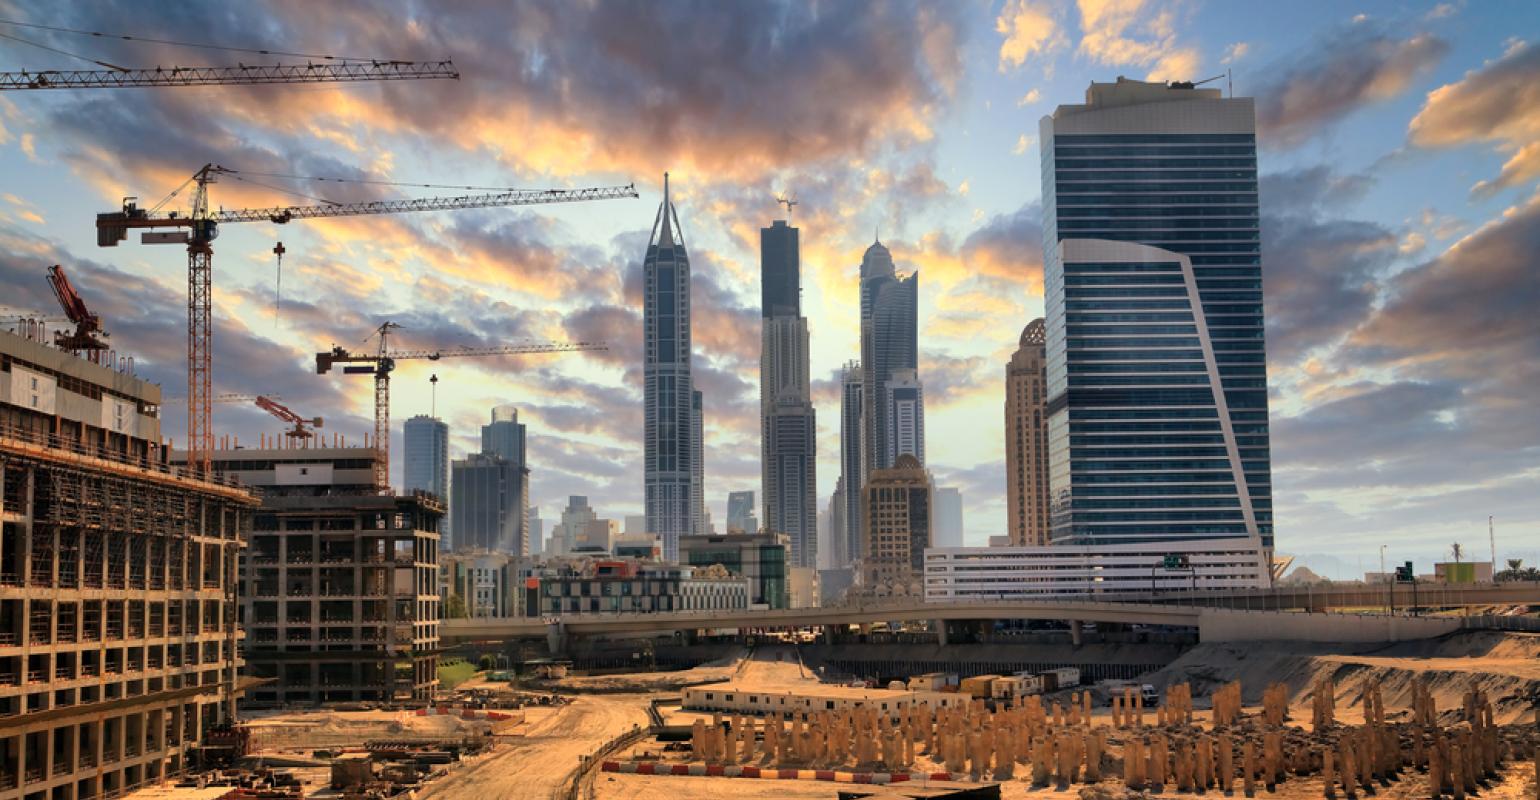 
Дубай является лидером строительного рынка Ближнего Востока